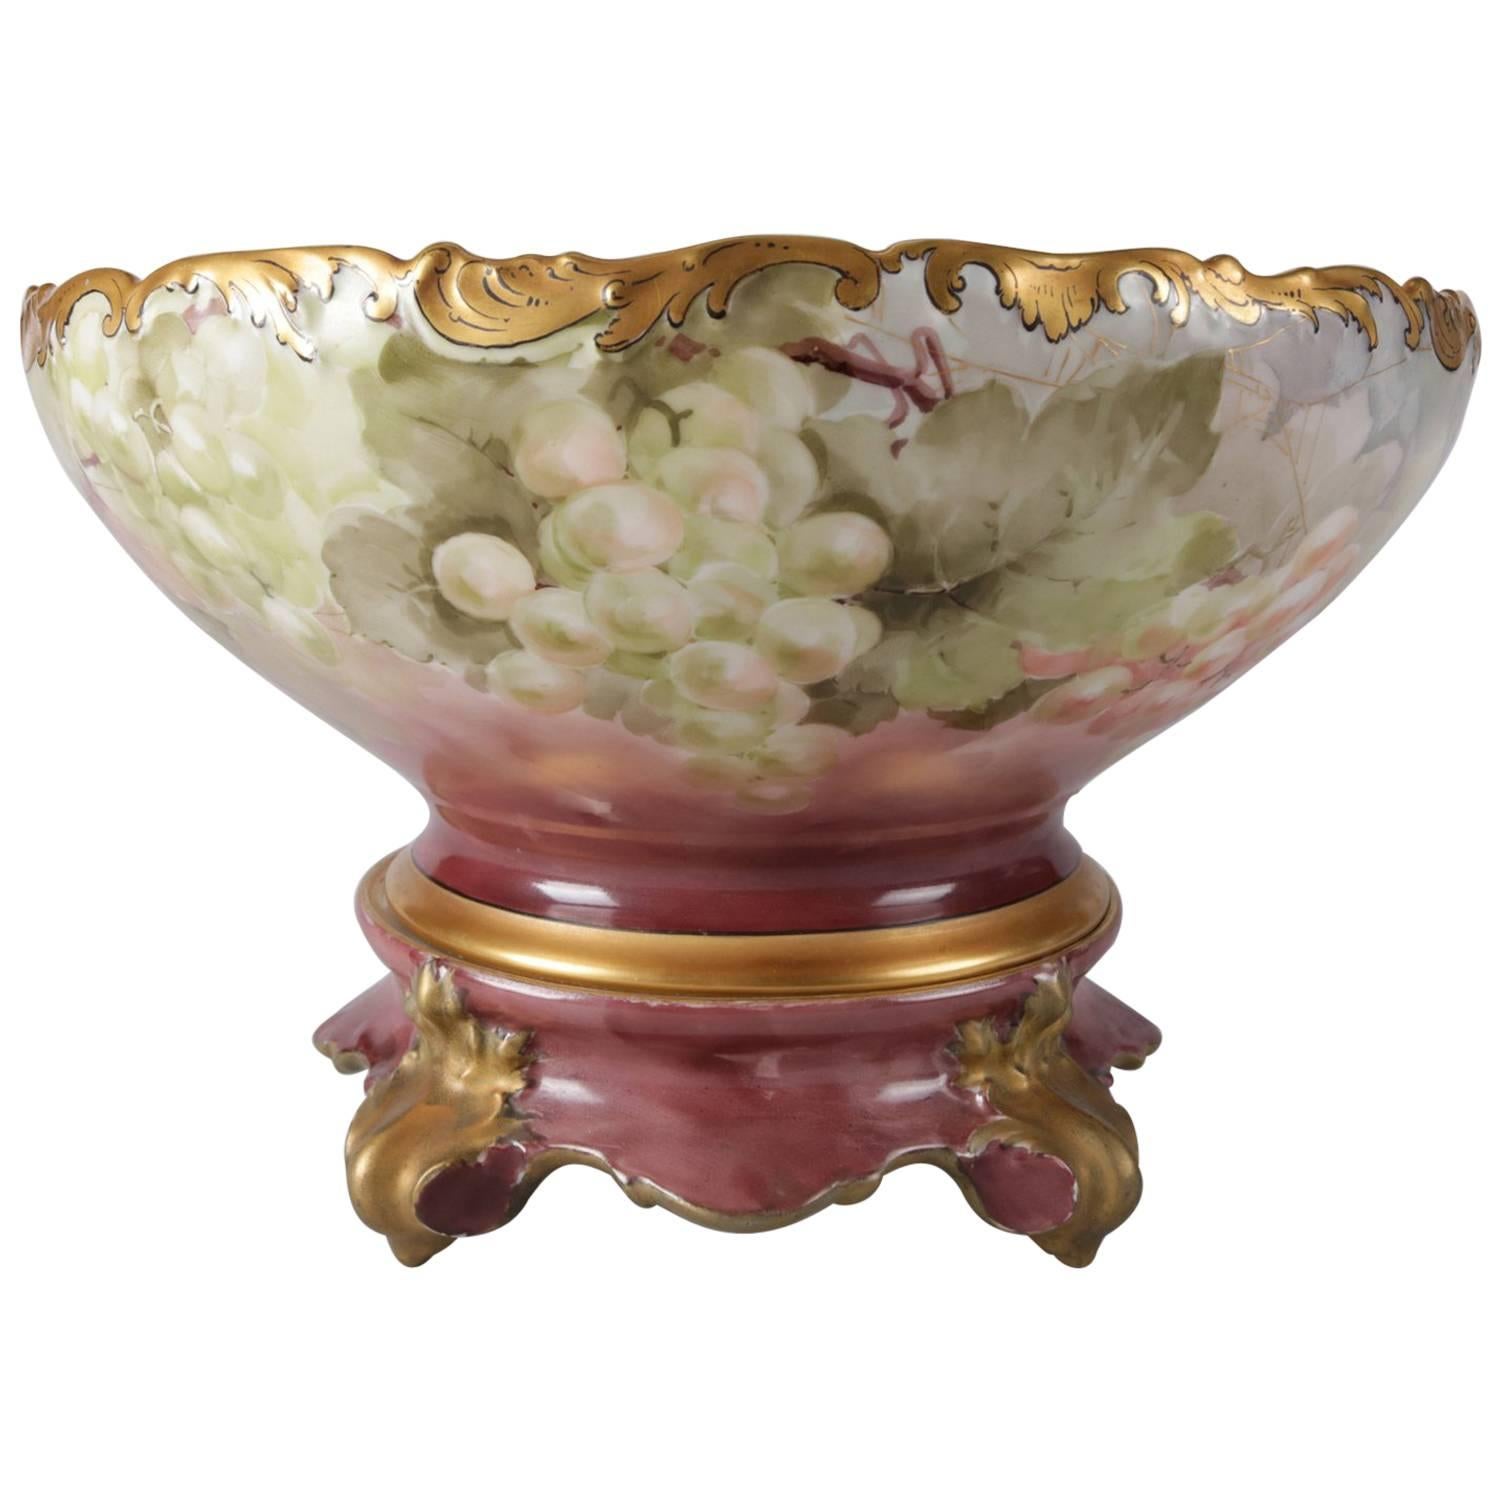 Antique French Tressemanes Vogt Hand-Painted, Gilt Limoges Porcelain Punch Bowl